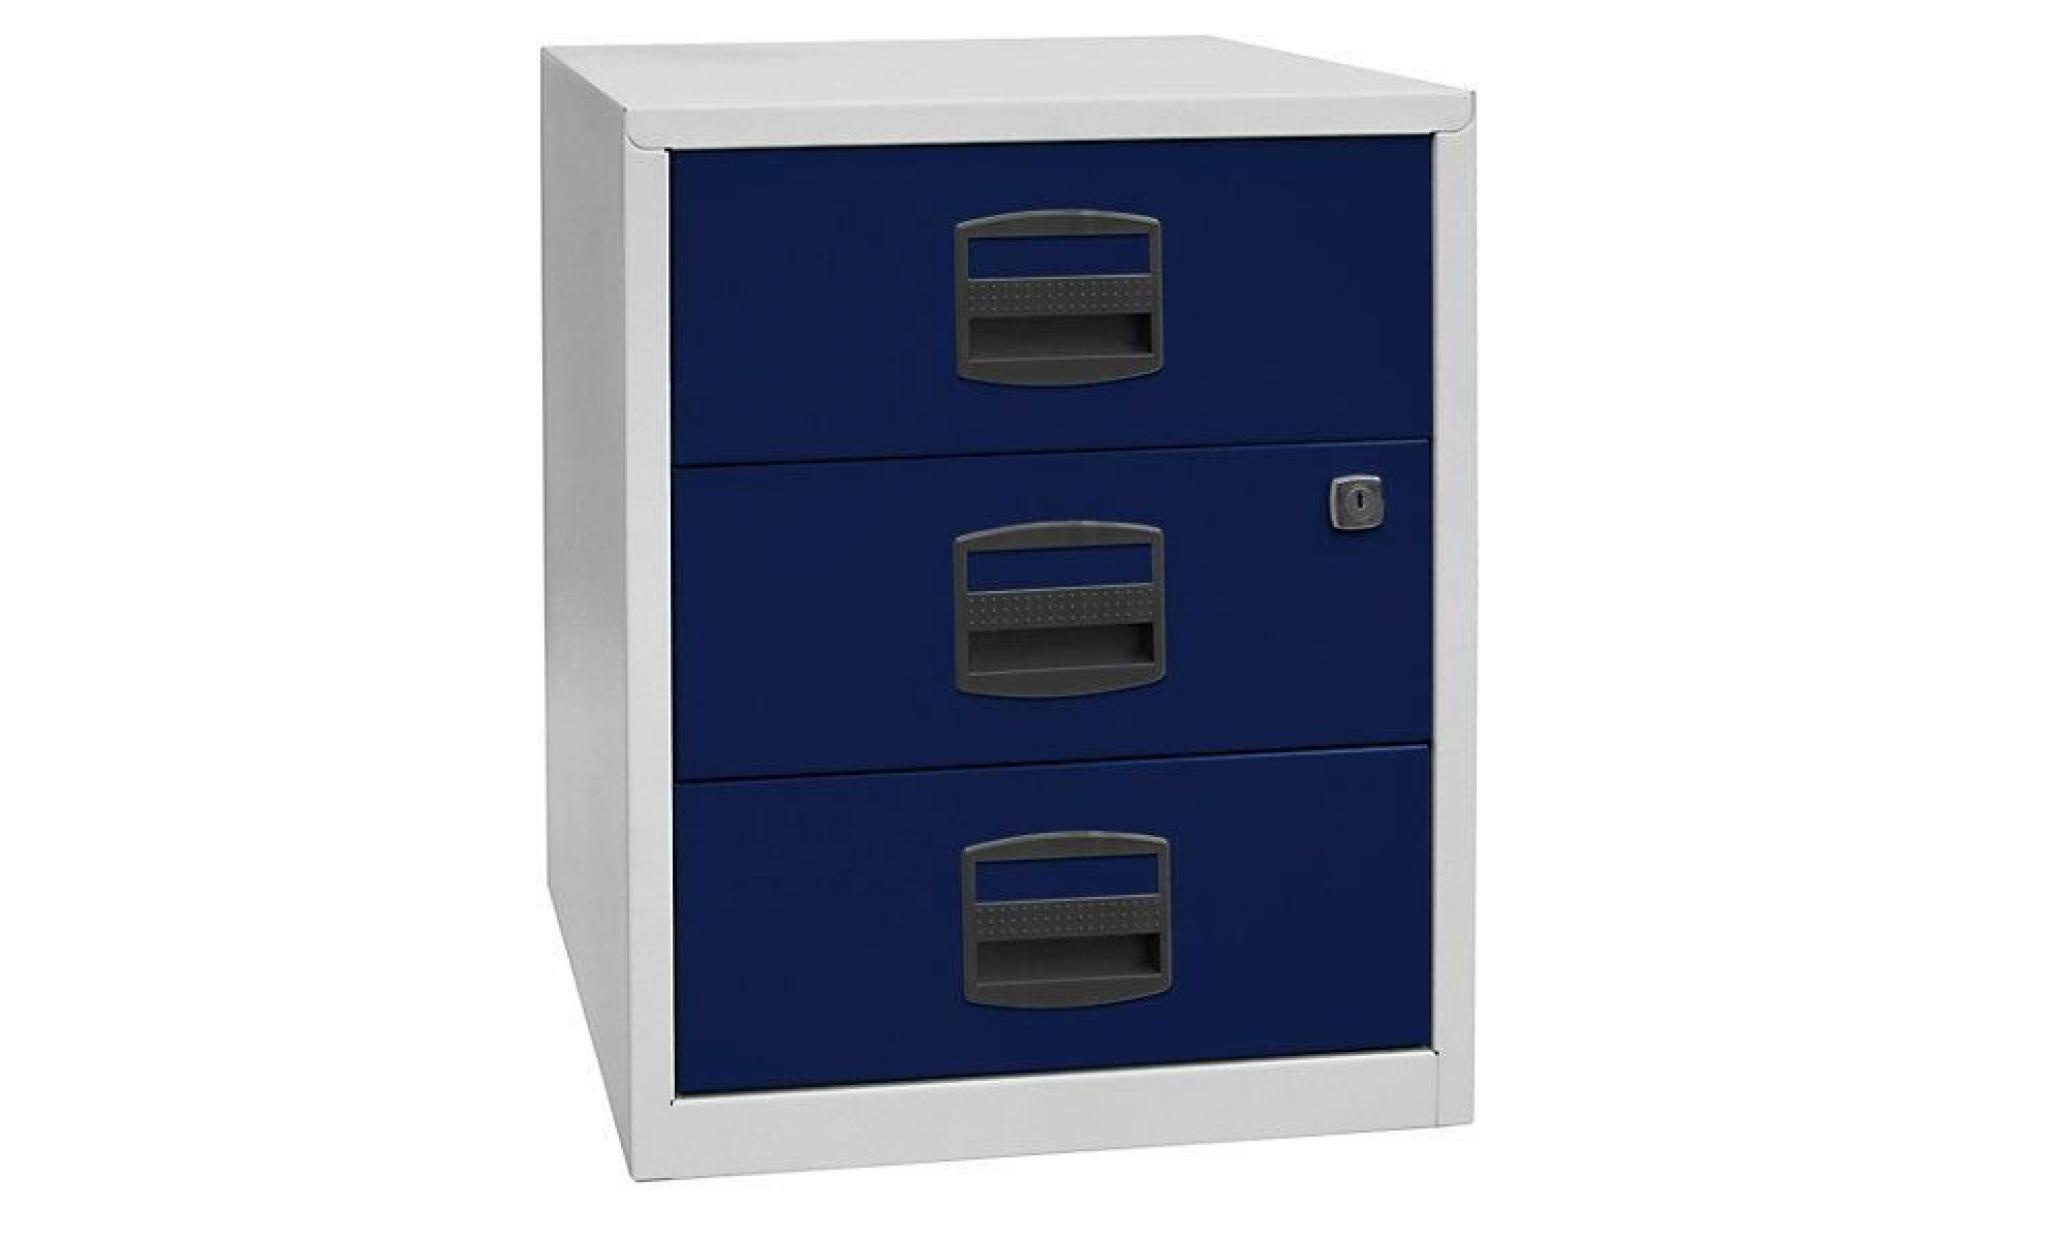 armoire mobile hauteur bureau pfa   3 tiroirs universels argent   armoire basse armoire de bureau armoires basses armoires de bureau